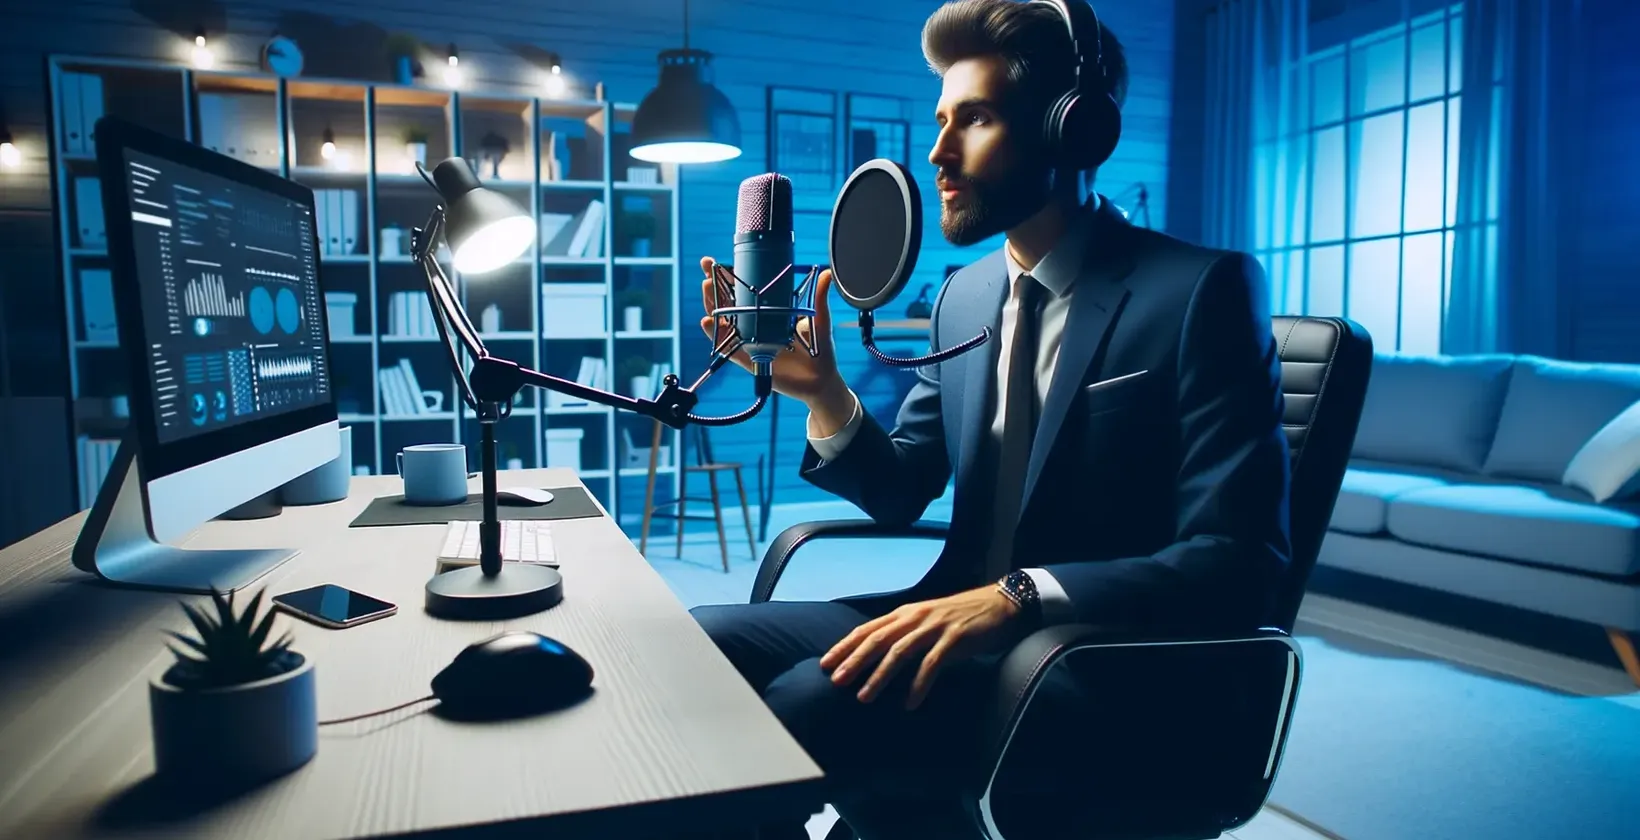 Formálně oblečený muž sedí u stolu, drží mikrofon a používá převodník řeči na text.